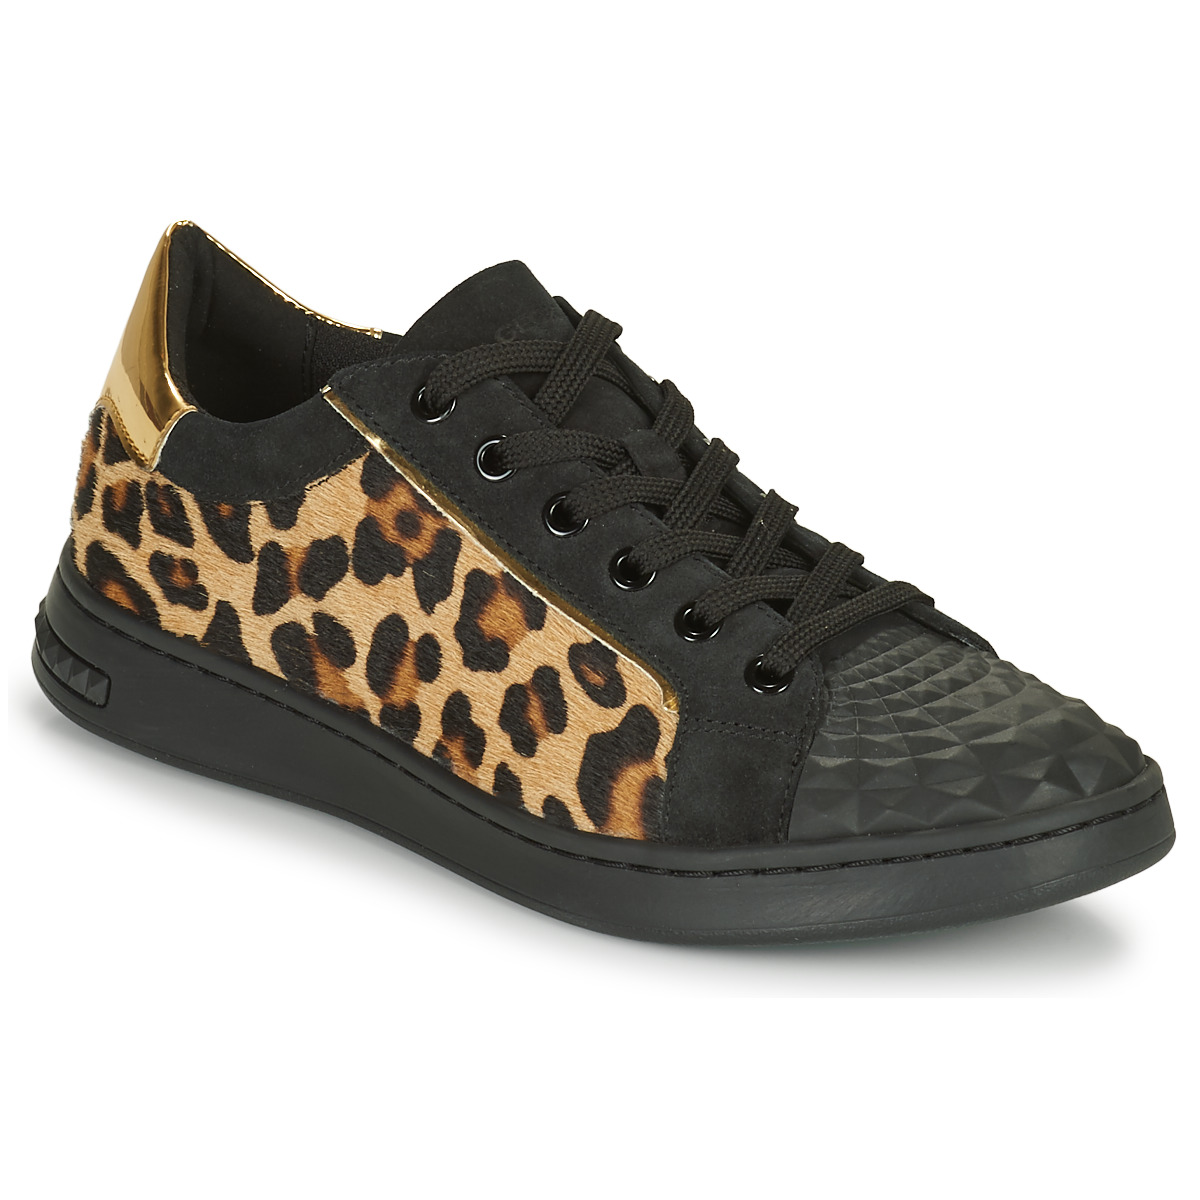 鞋子 女士 球鞋基本款 Geox 健乐士 JAYSEN 黑色 / Leopard